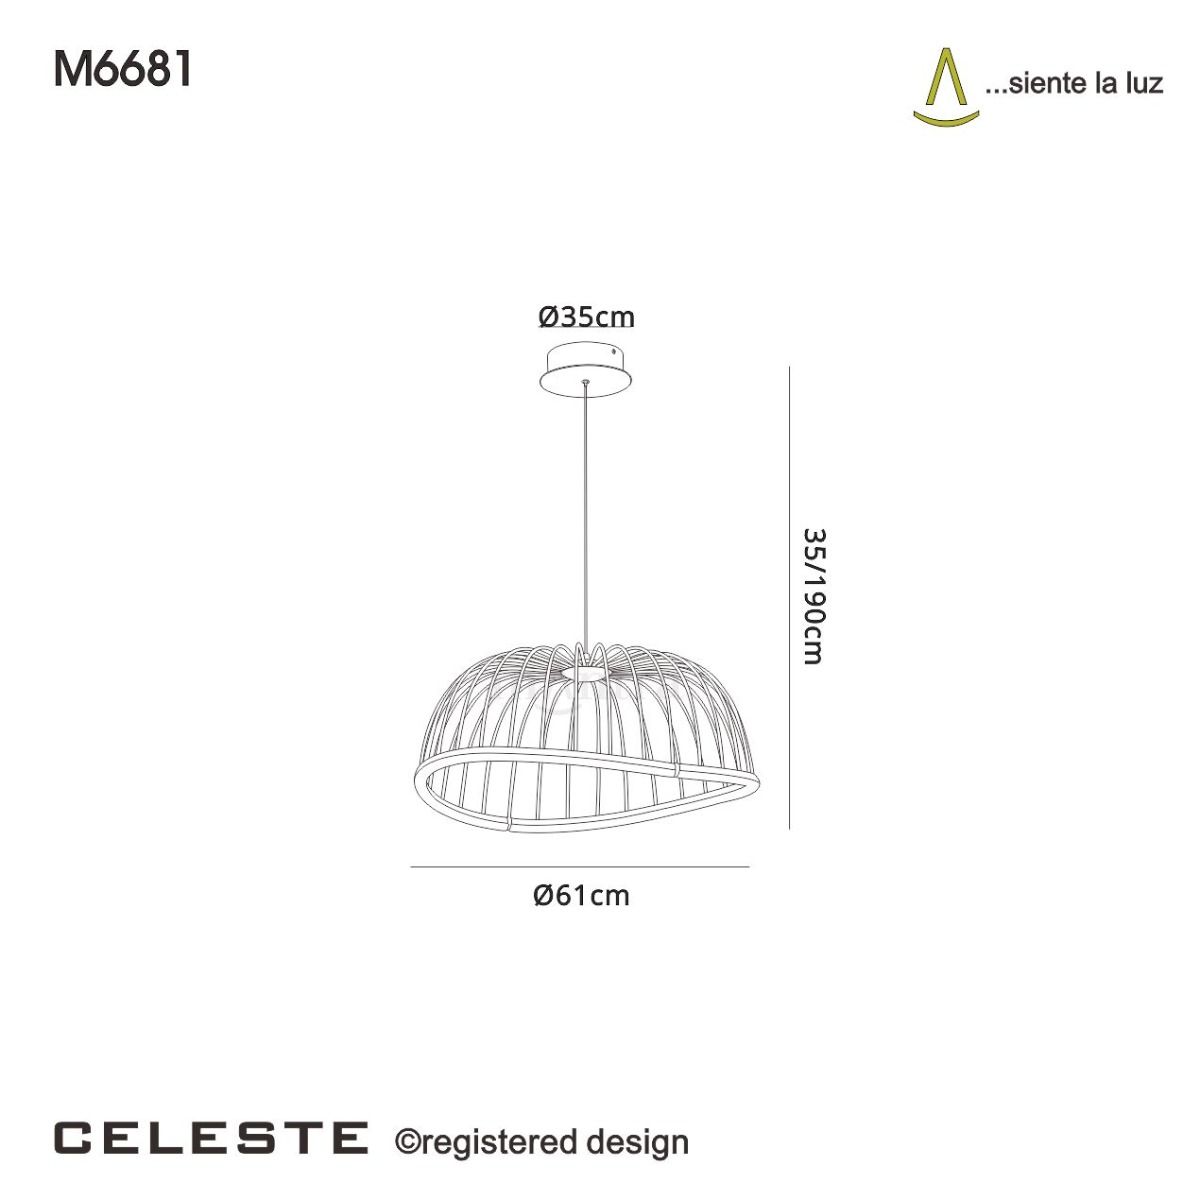 M6681 Mantra Celeste Medium Ceiling LED White Pendant